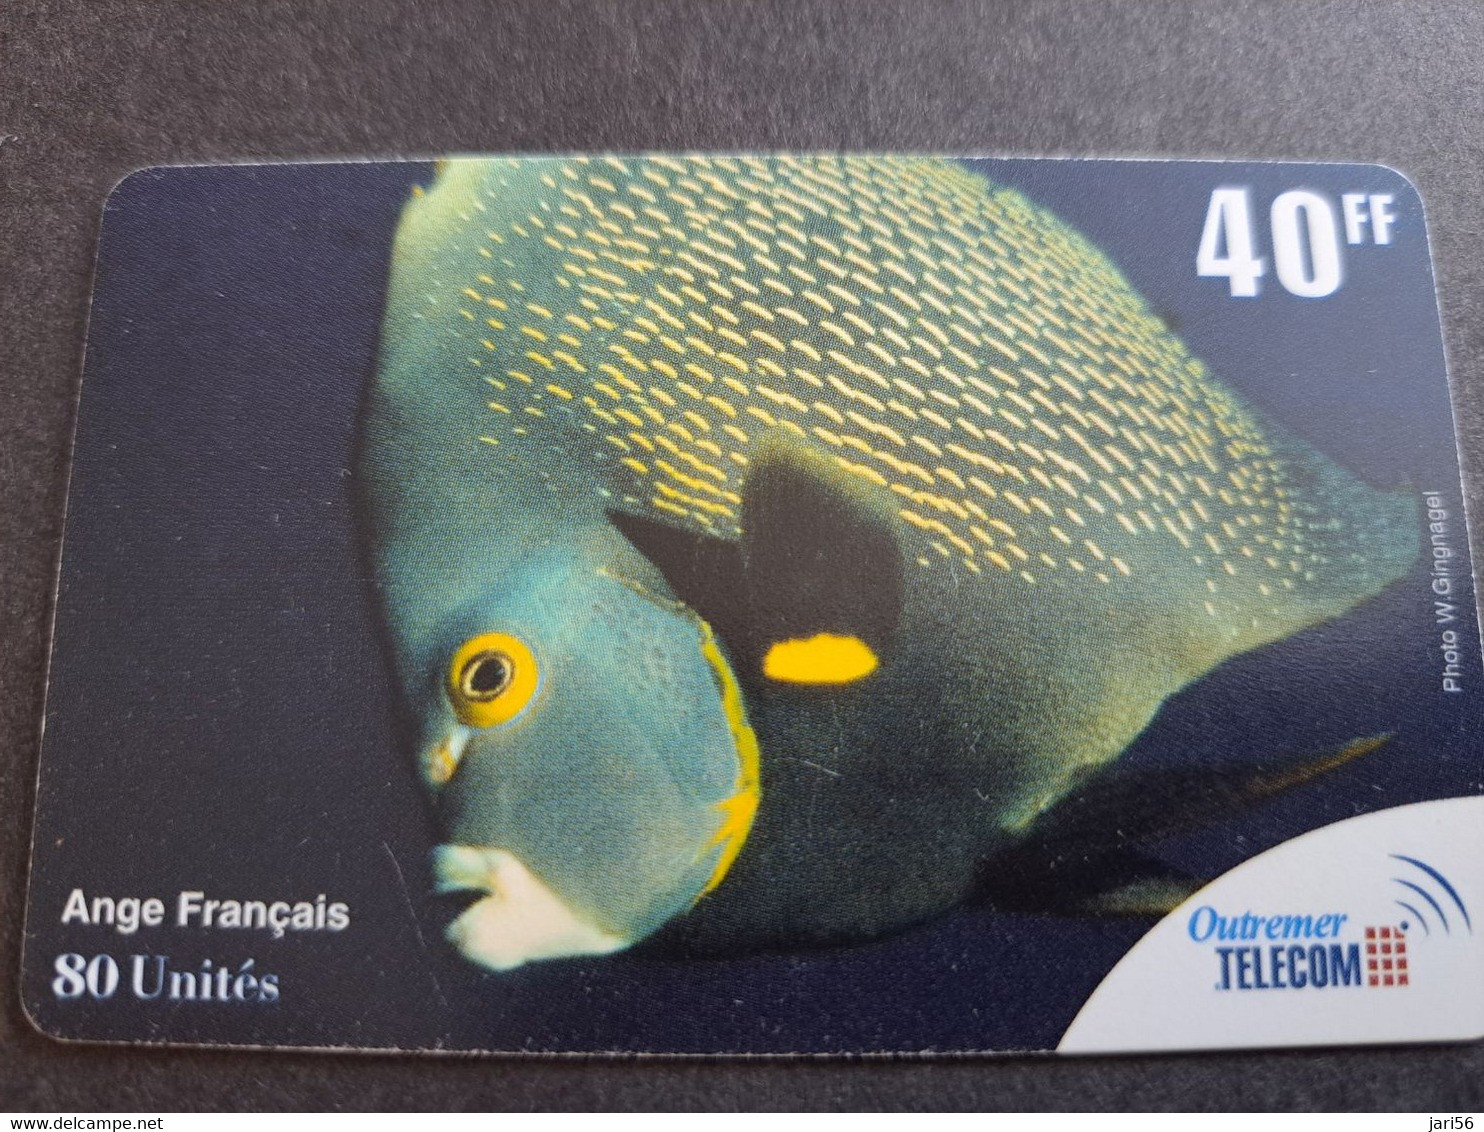 ST MARTIN  OUTREMER TELECOM/ SERIE 4 CARDS   TROPICAL FISH 20FF,2X 40FF, 80FF.  ANTF OT68-OT 71 ** 10213 ** - Antillen (Französische)